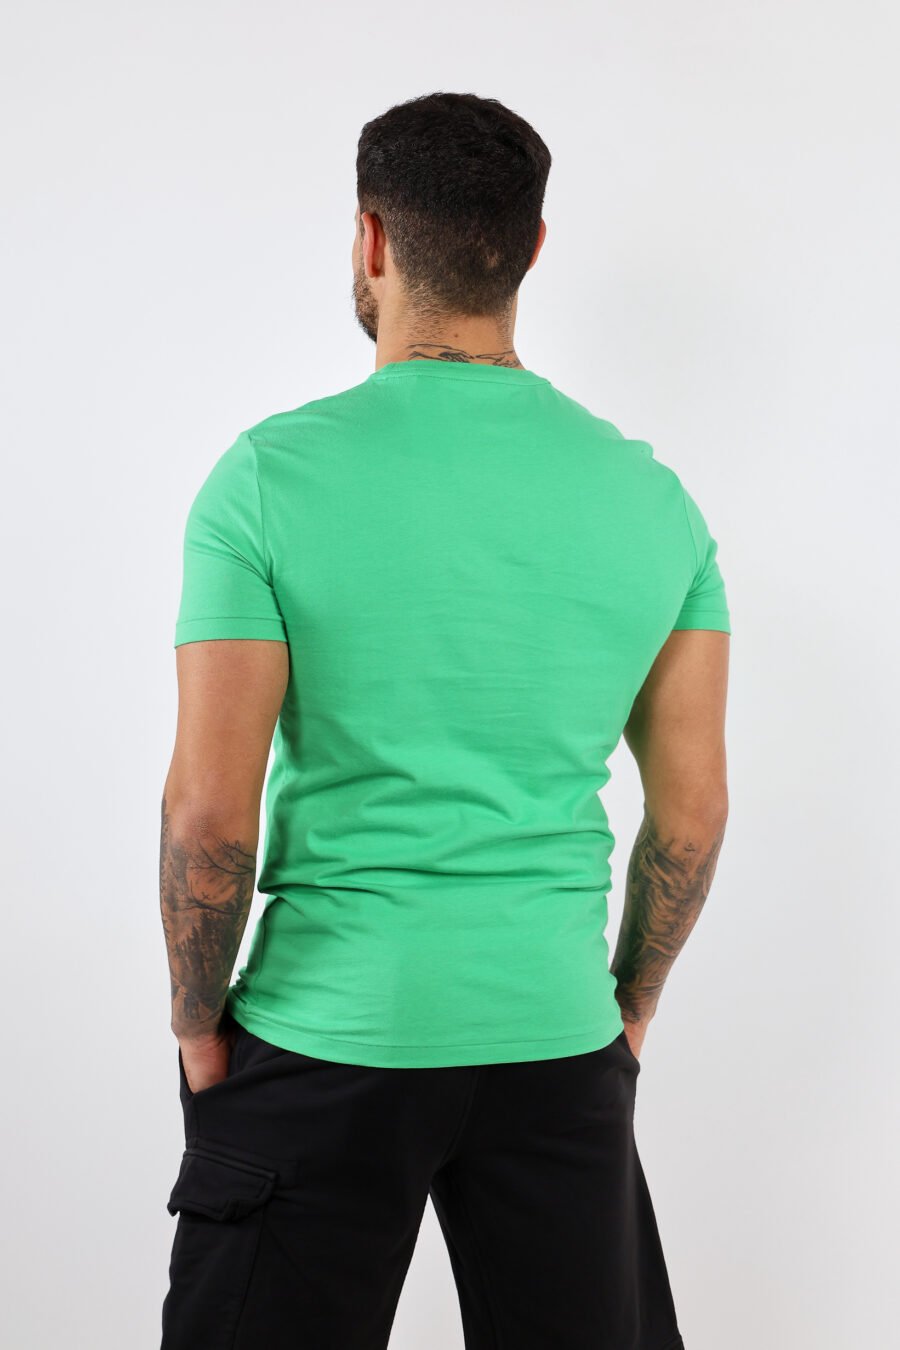 Camiseta verde y amarilla con minilogo "polo" - BLS Fashion 305